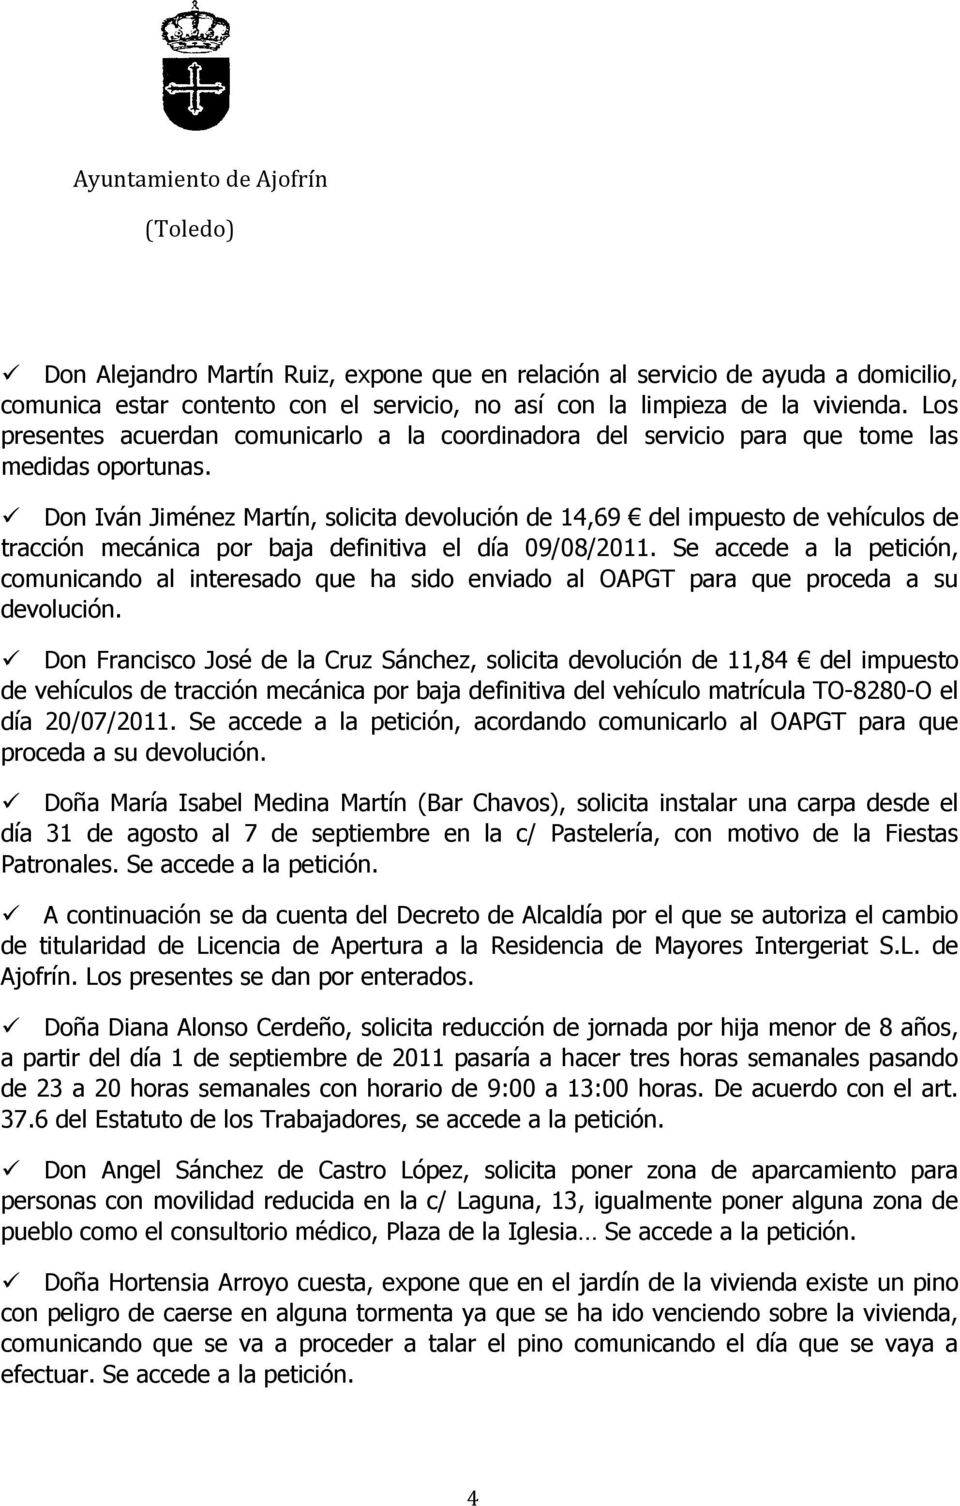 Don Iván Jiménez Martín, solicita devolución de 14,69 del impuesto de vehículos de tracción mecánica por baja definitiva el día 09/08/2011.